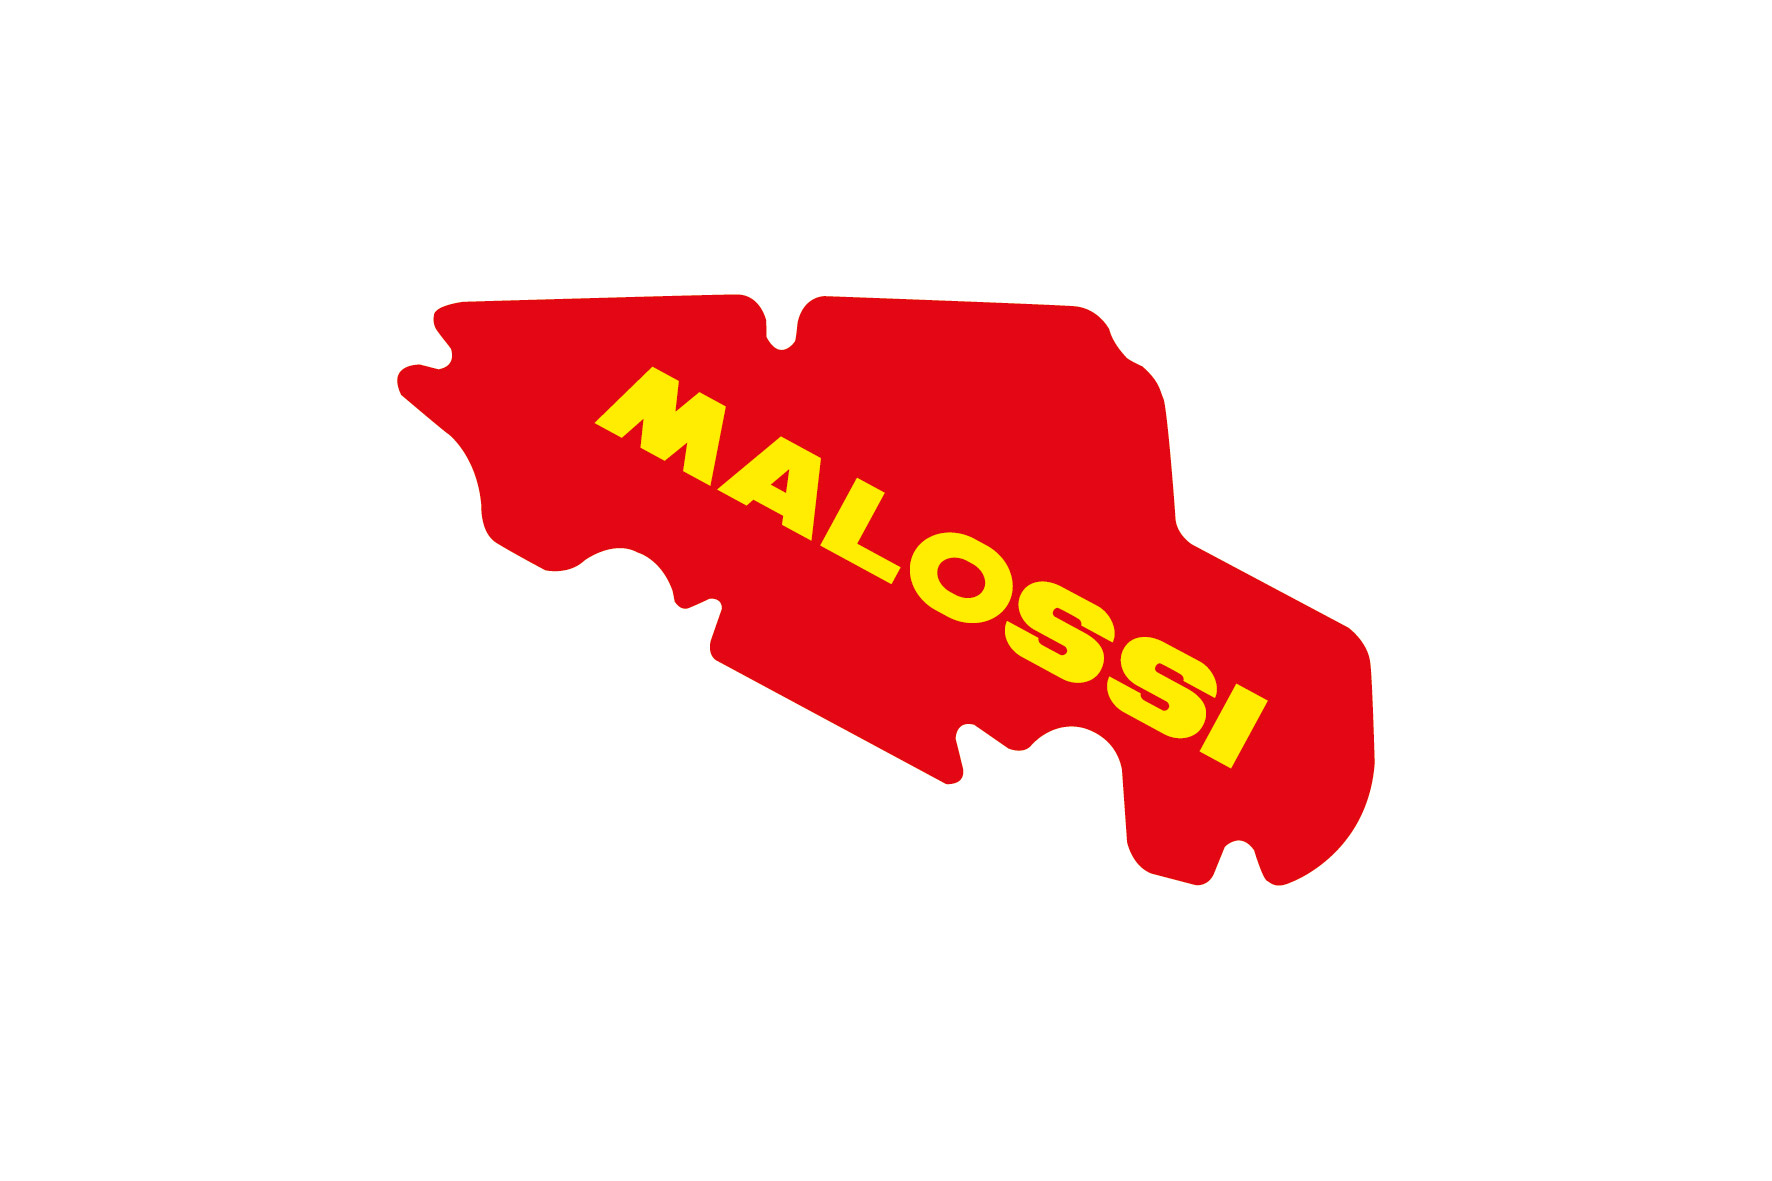 Filtro Aria Malossi Red Sponge - 1412131